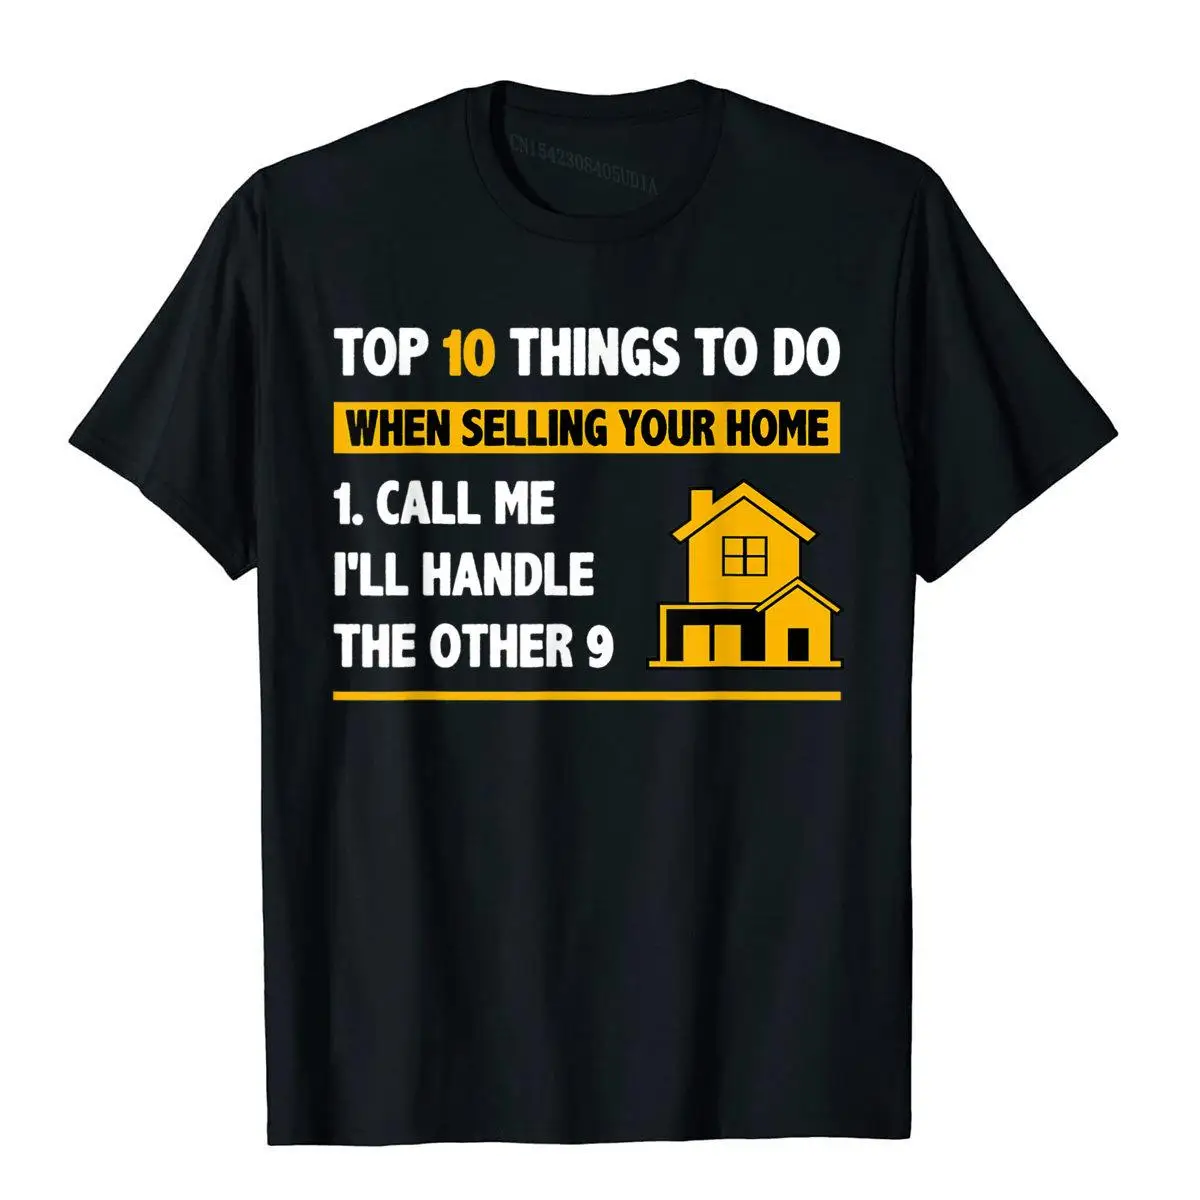 

Топ 10 вещей, которые нужно сделать при продаже, забавная футболка с рисунком вашего дома, новинка, хлопковые мужские Топы И Футболки, популяр...